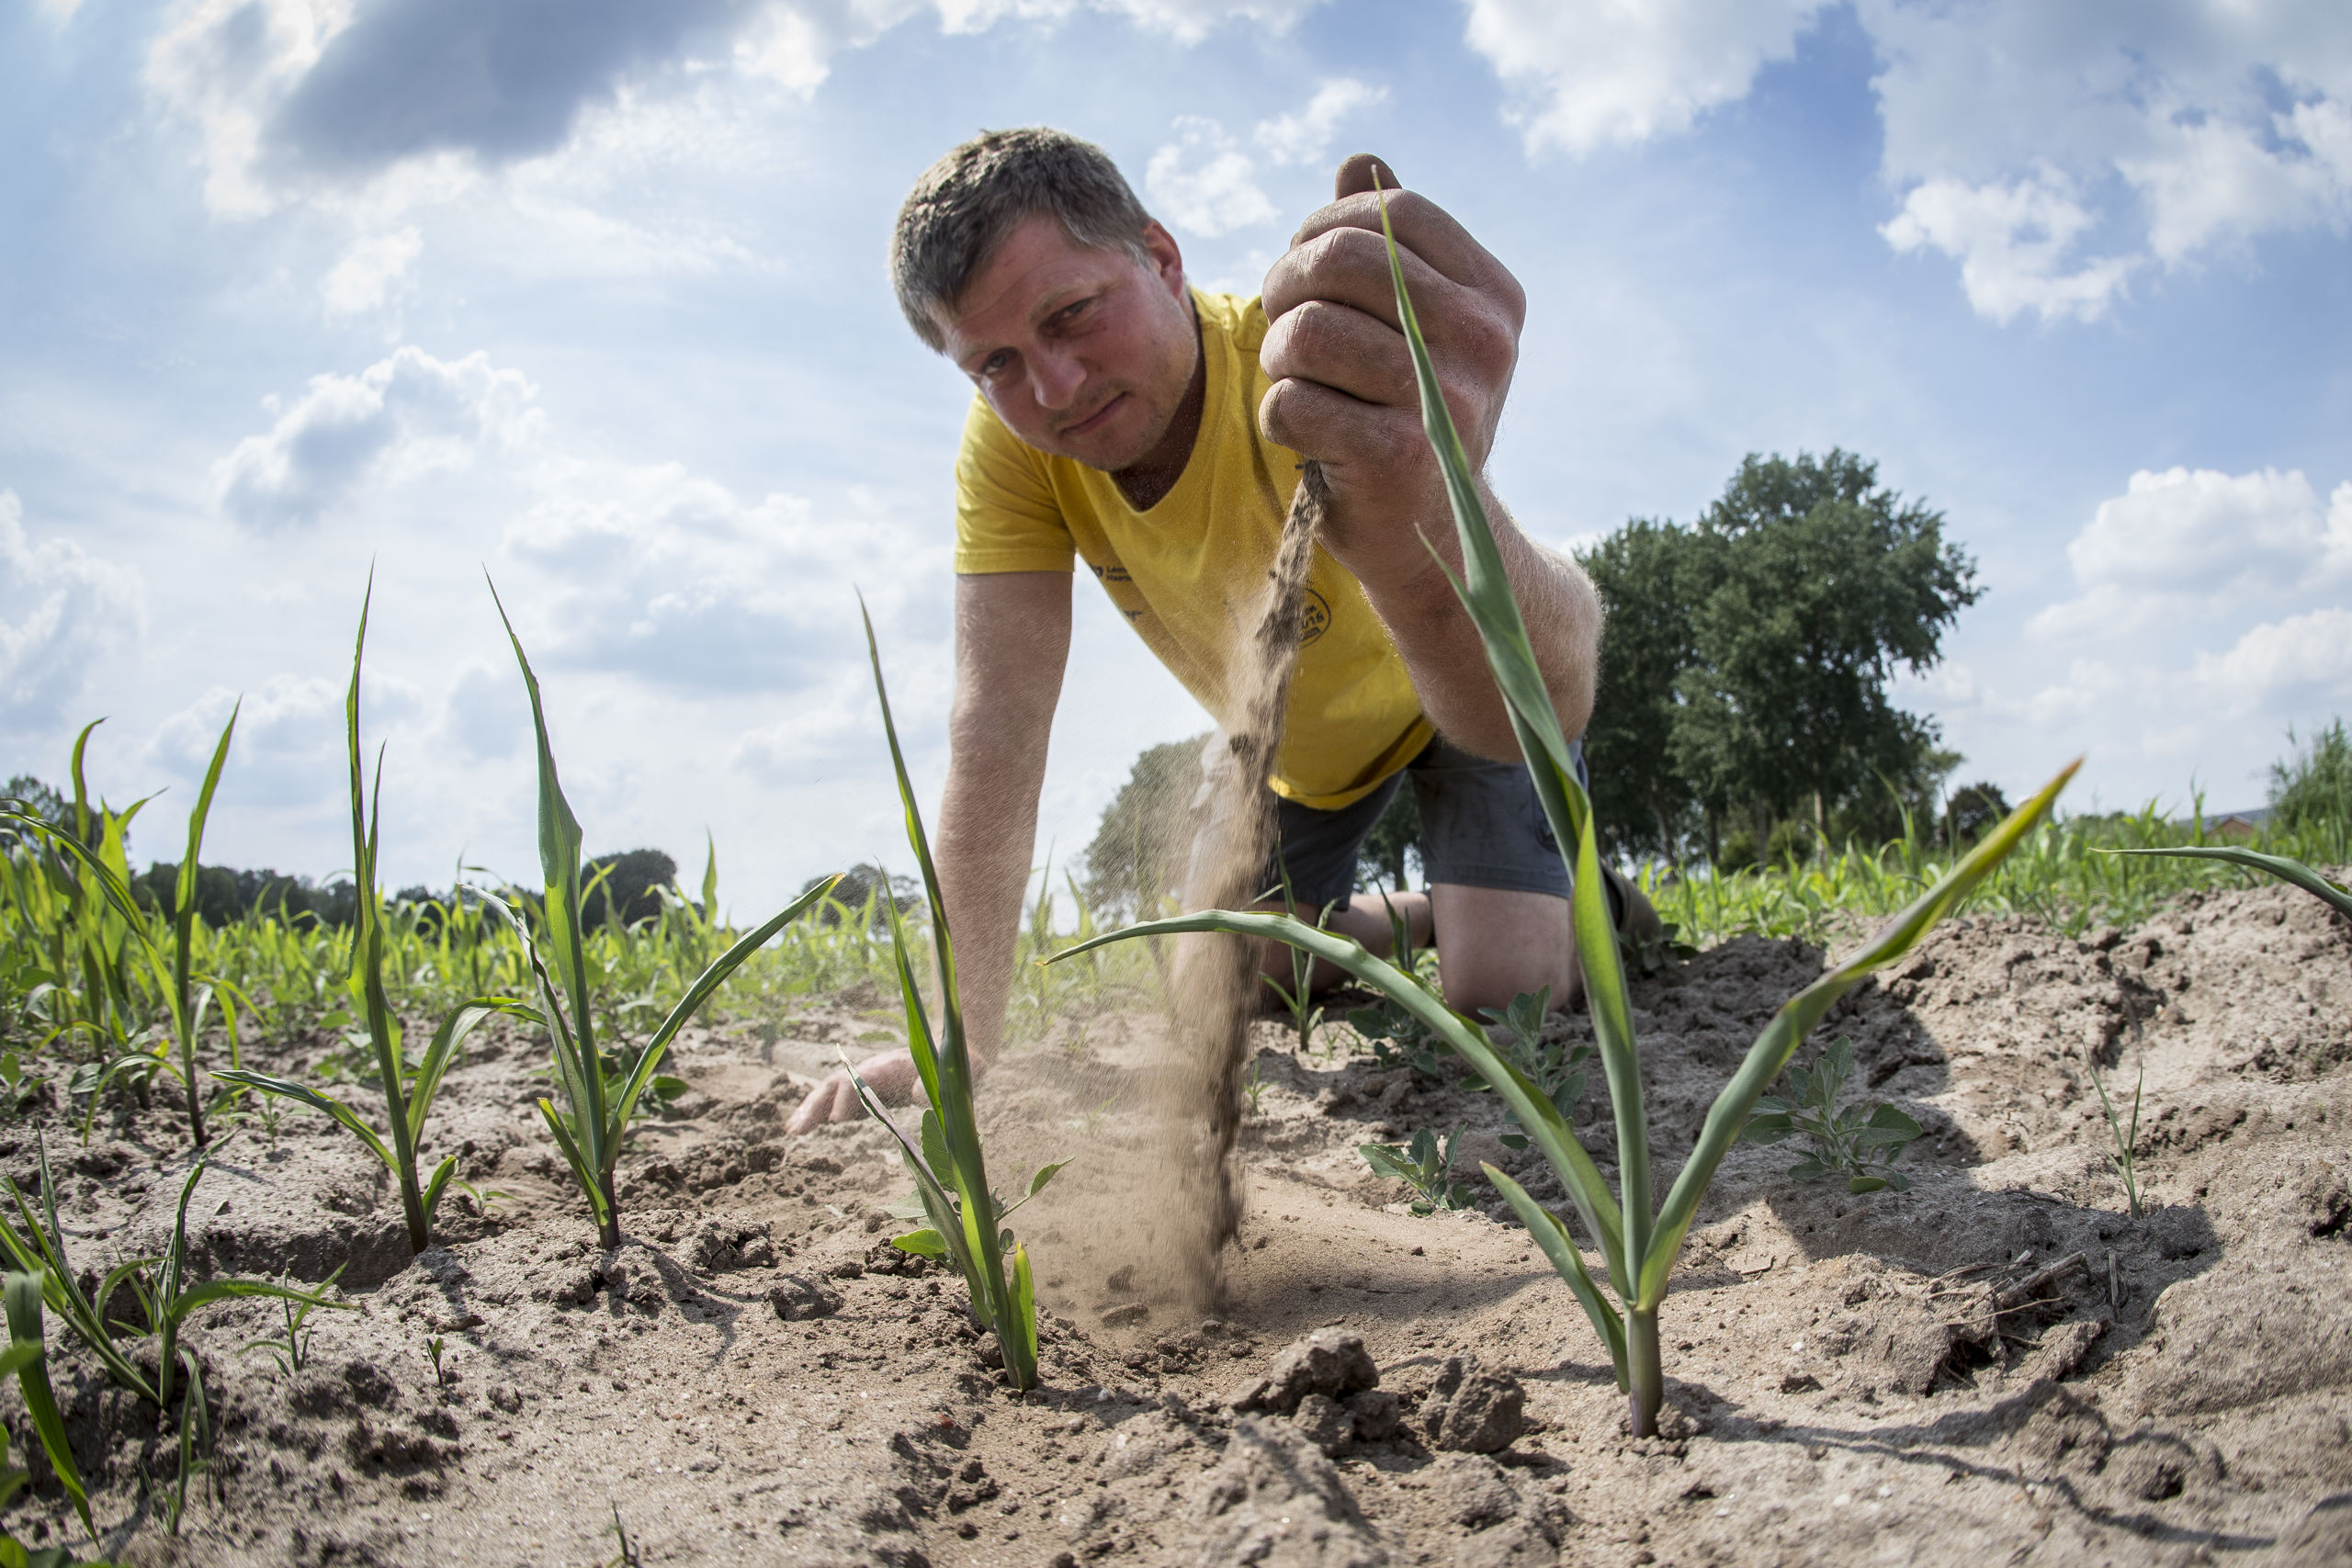 Akkerbouwer Martijn Vorkink bekijkt de jonge maisplantjes in de droge grond op zijn maisveld. 